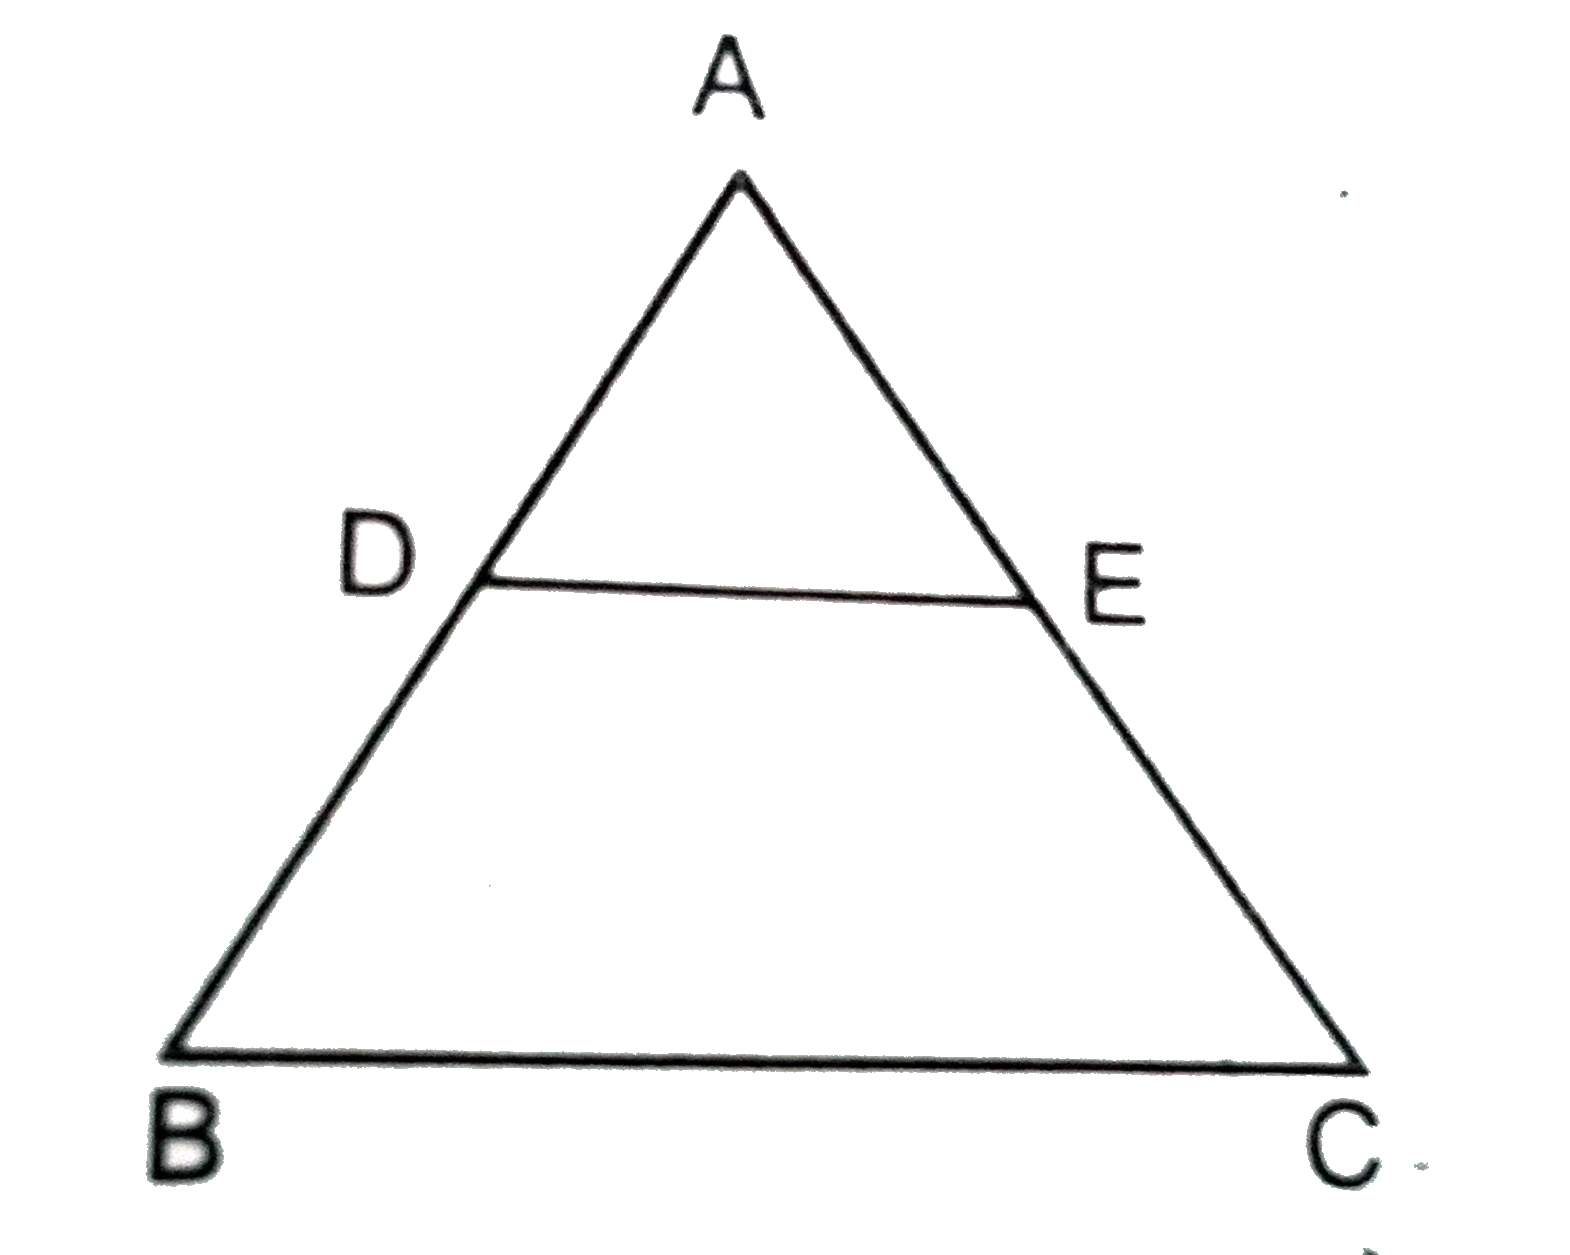 दिए गये चित्र में DE||BC और DE:BC =4:5।DeltaADE  और समलम्ब चतुर्भुज BCED के क्षेत्रफलों का अनुपात ज्ञात कीजिए ।